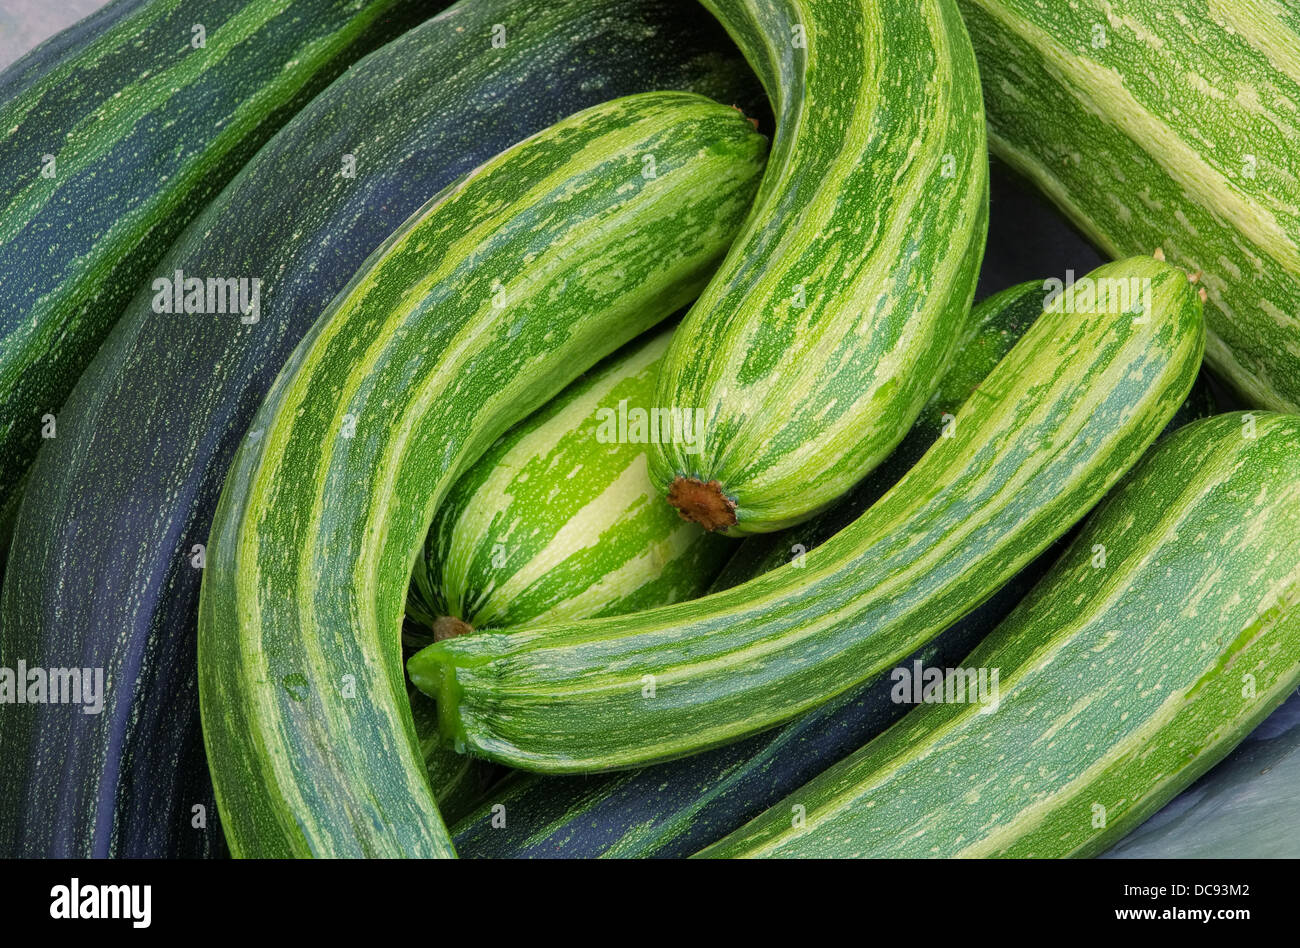 Zucchini - courgette 10 Stock Photo